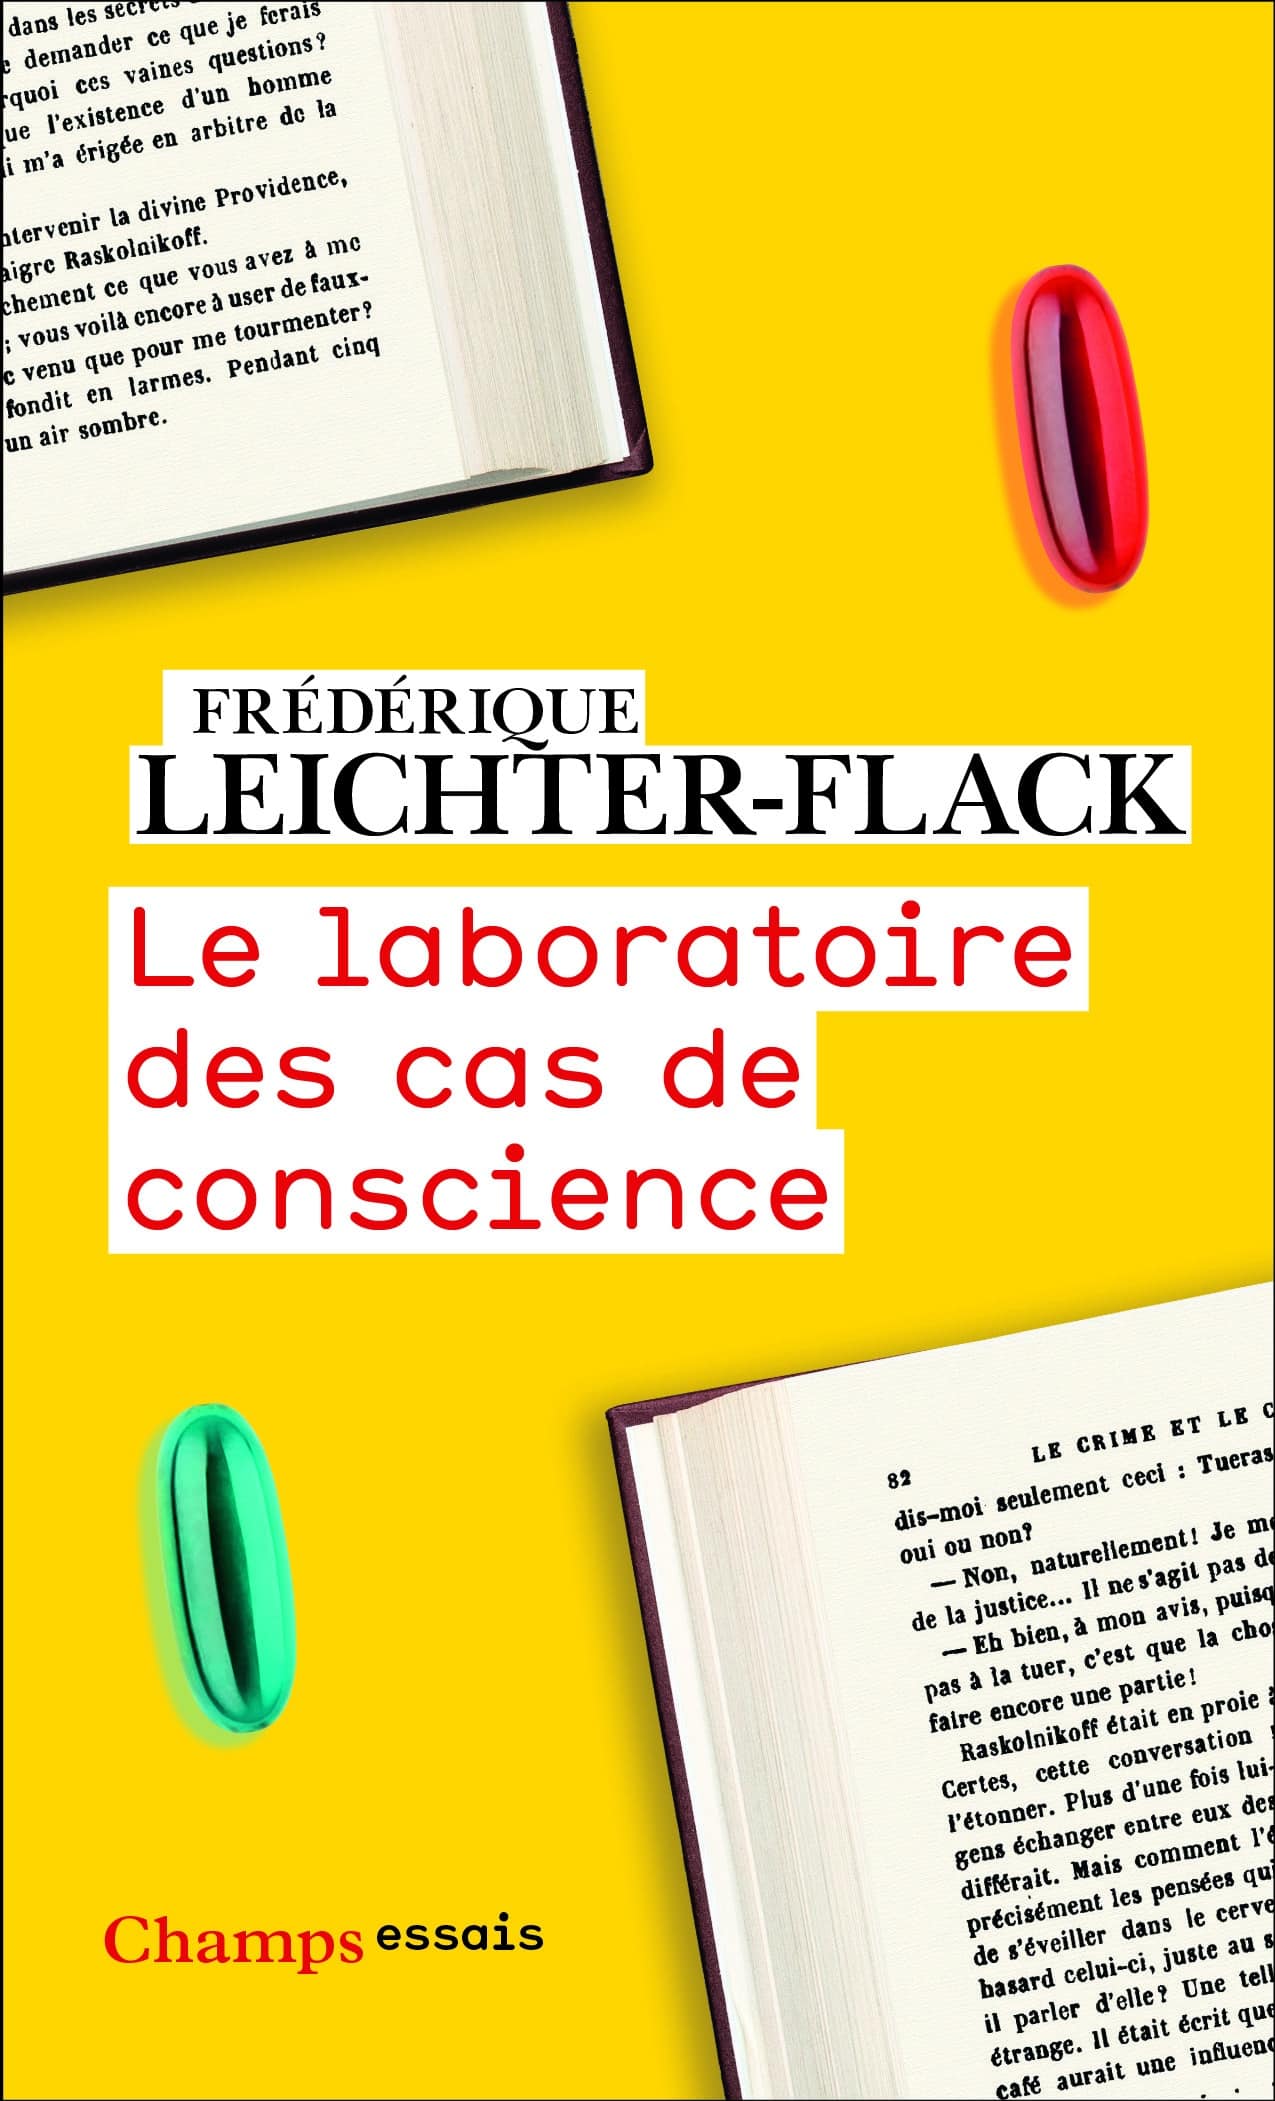 Couverture de "Le laboratoire des cas de conscience", de Frédérique Leichter-Flack © Champs